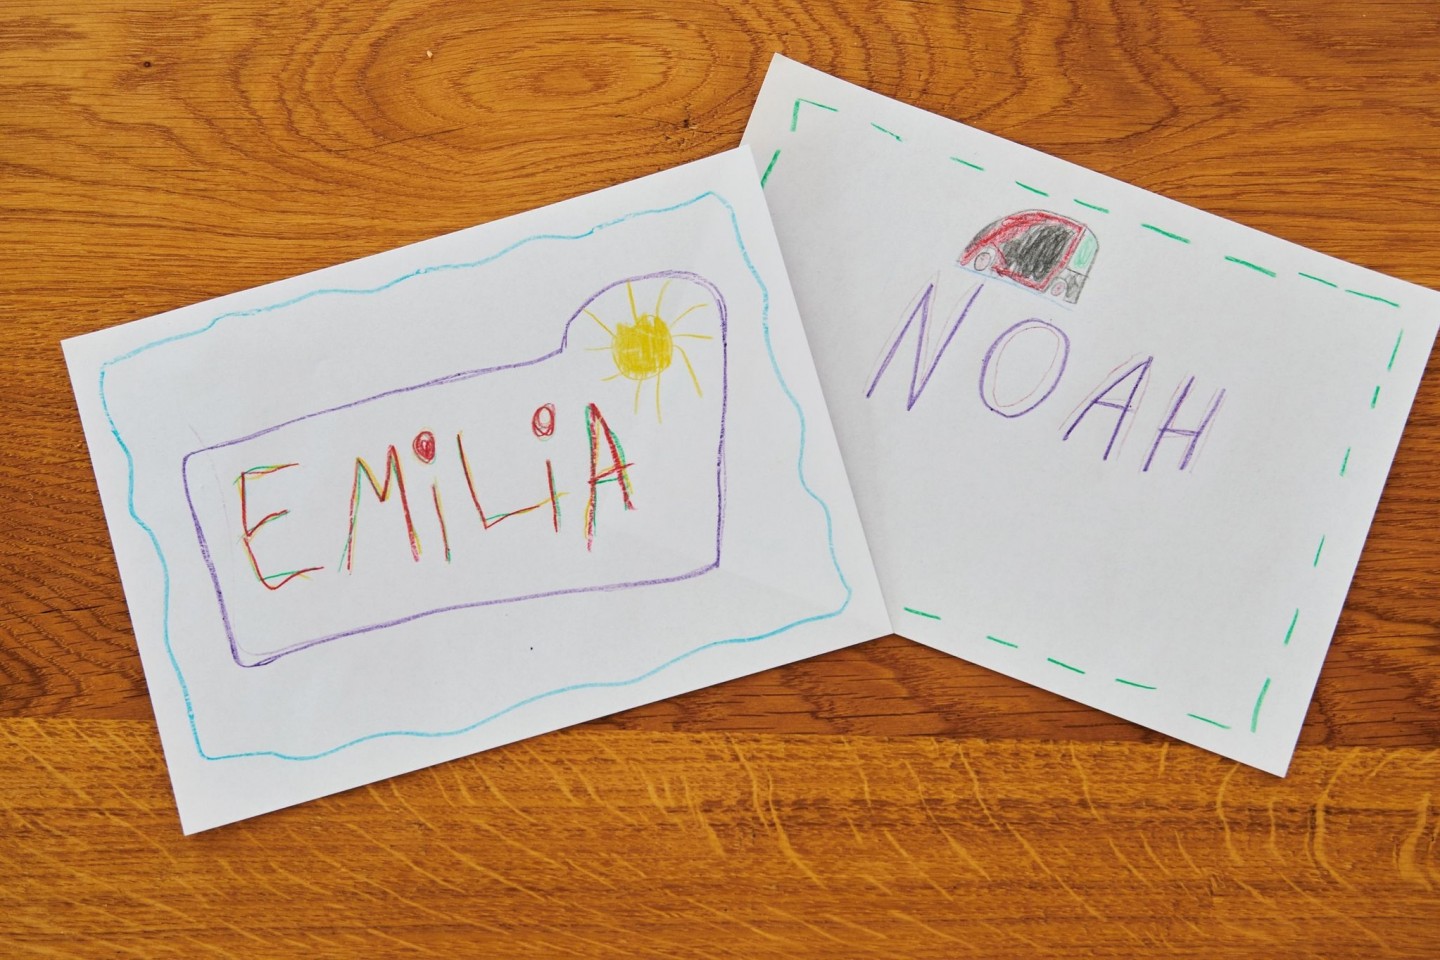 Emilia und Noah waren im vergangenen Jahr die beliebtesten Namen.